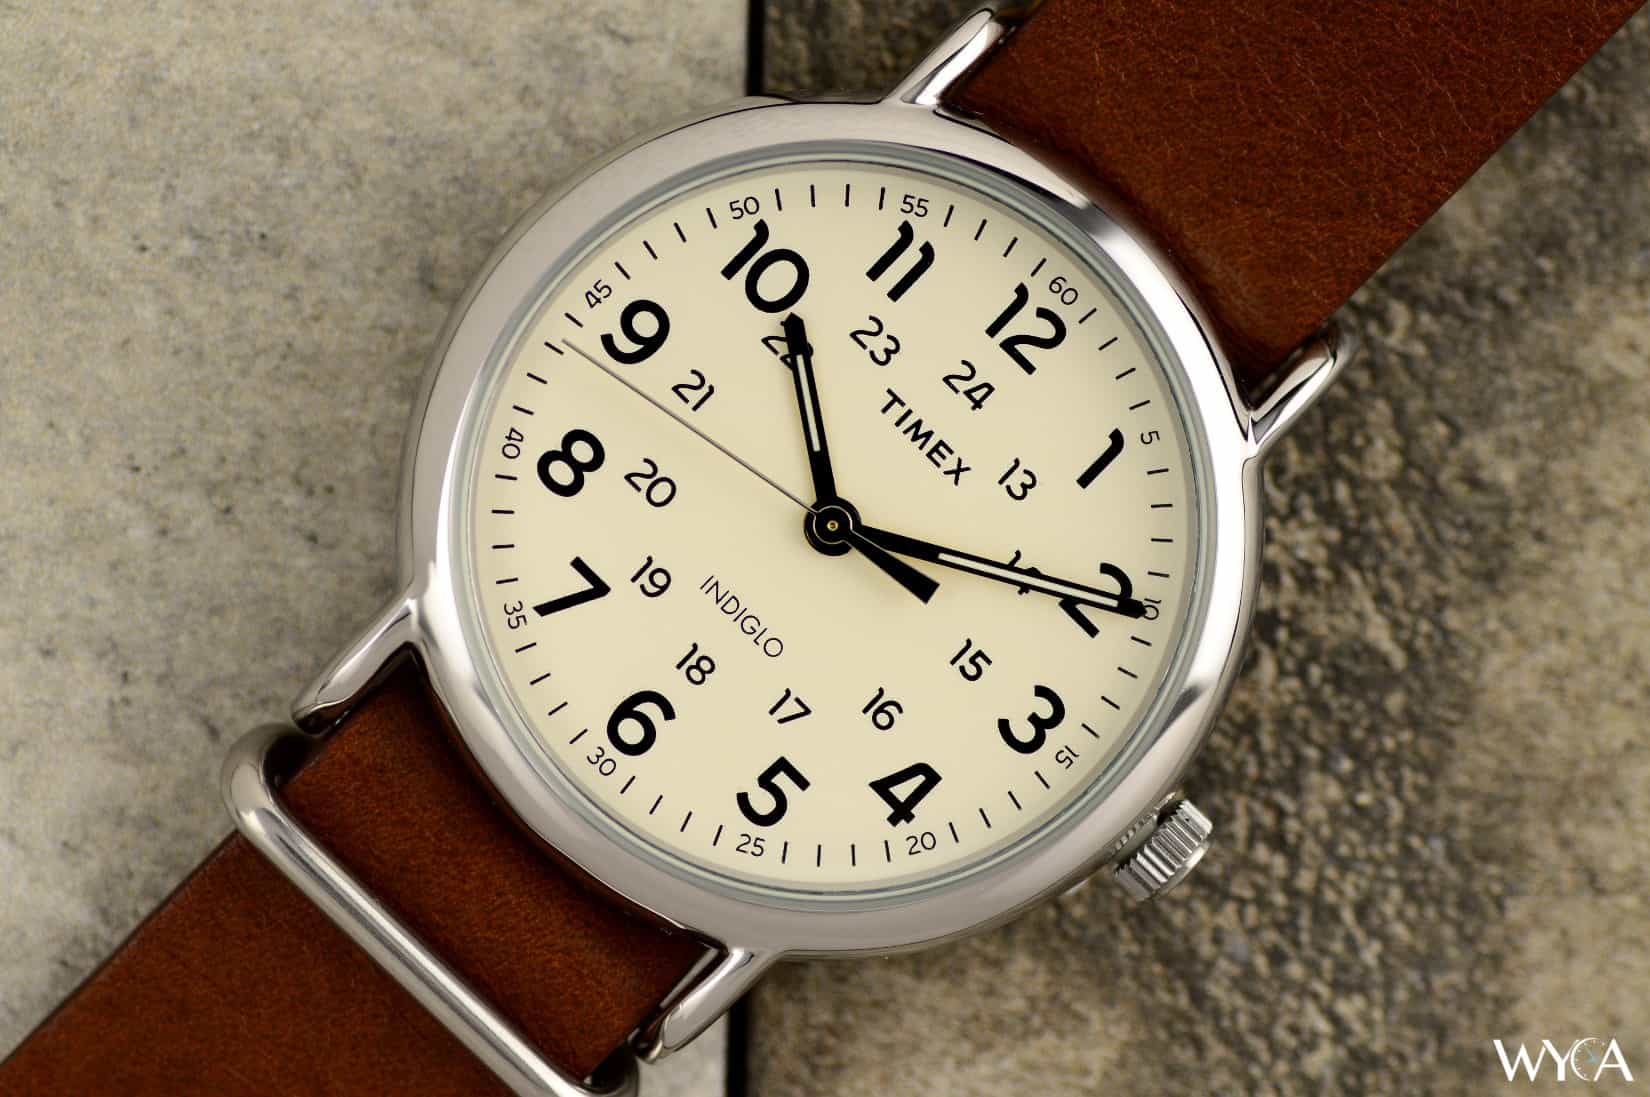 Название часов наручных. Timex t2p495. Часы Timex Weekender. Наручные часы Timex t2p495. Часы Timex tw2r63100.